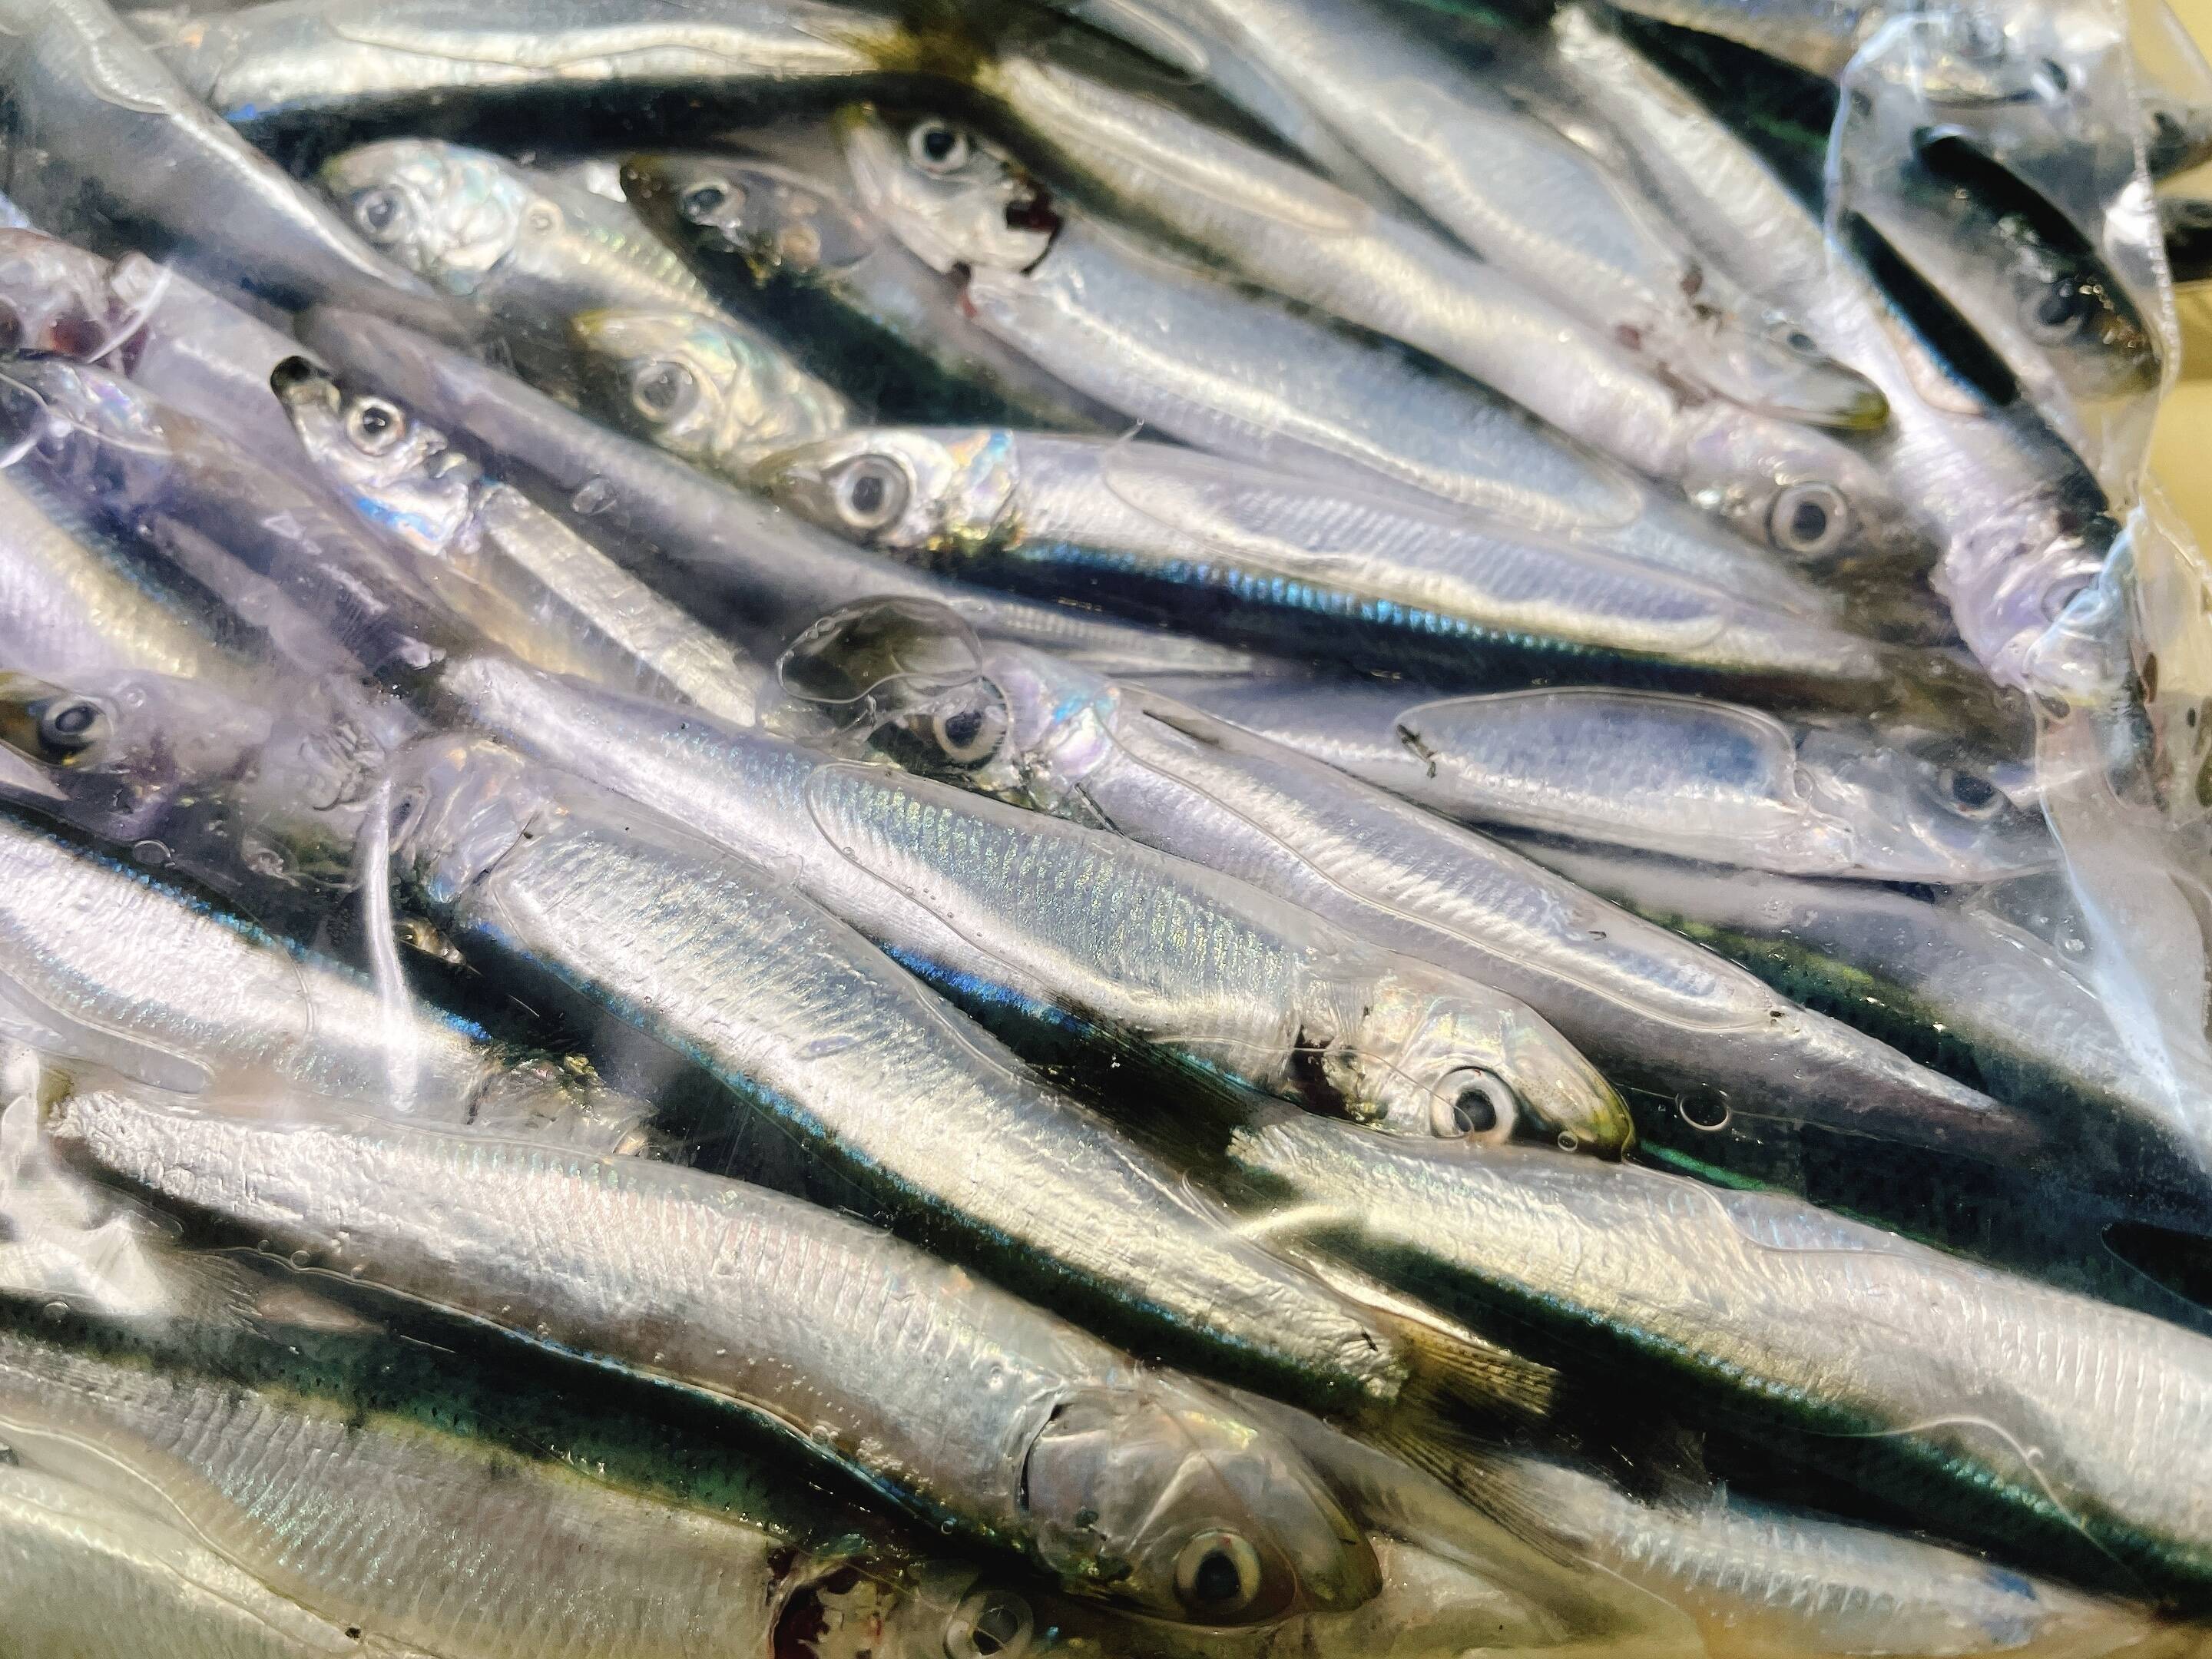 B級品 雑魚1キロセット 鹿児島県産 食べチョク 農家 漁師の産直ネット通販 旬の食材を生産者直送